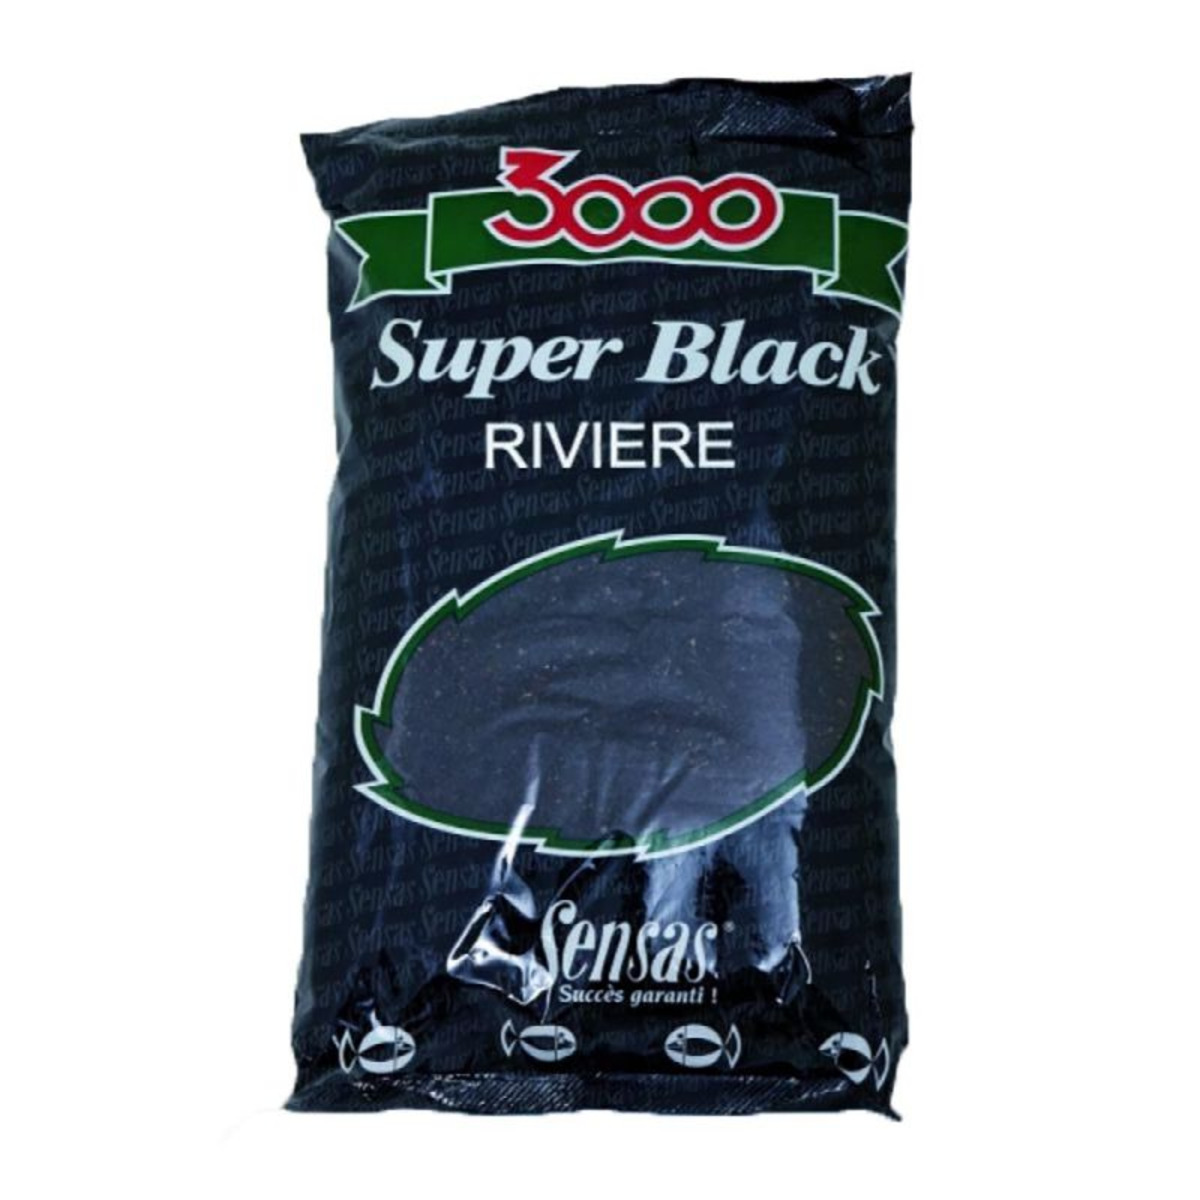 Sensas 3000 Super Black Riviere - 1 kg